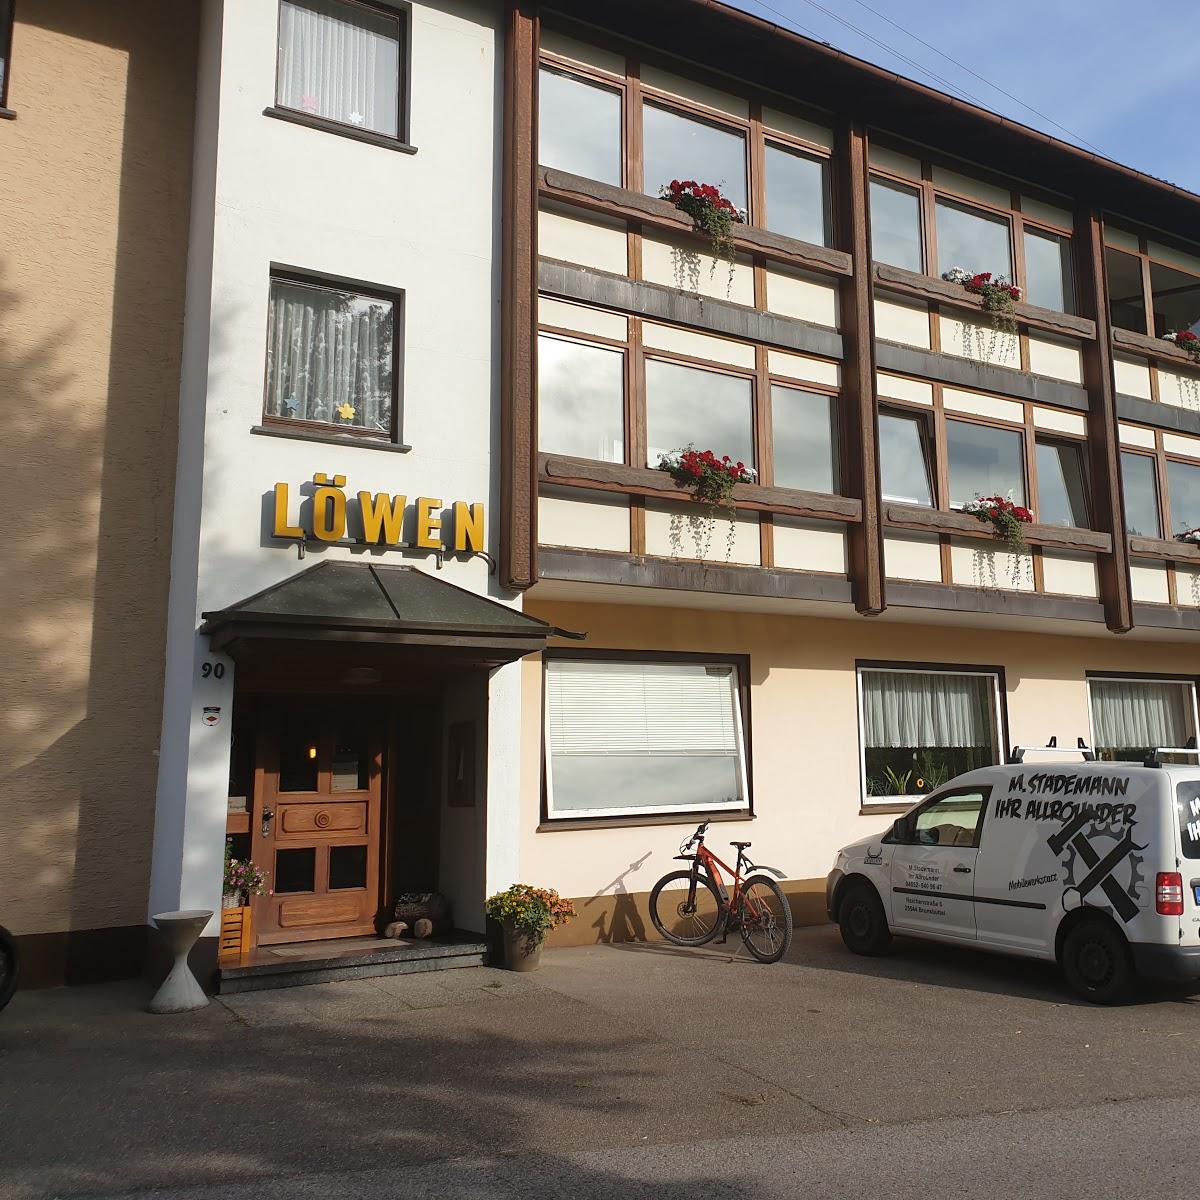 Restaurant "Löwen - Familie Finkbeiner" in Baiersbronn